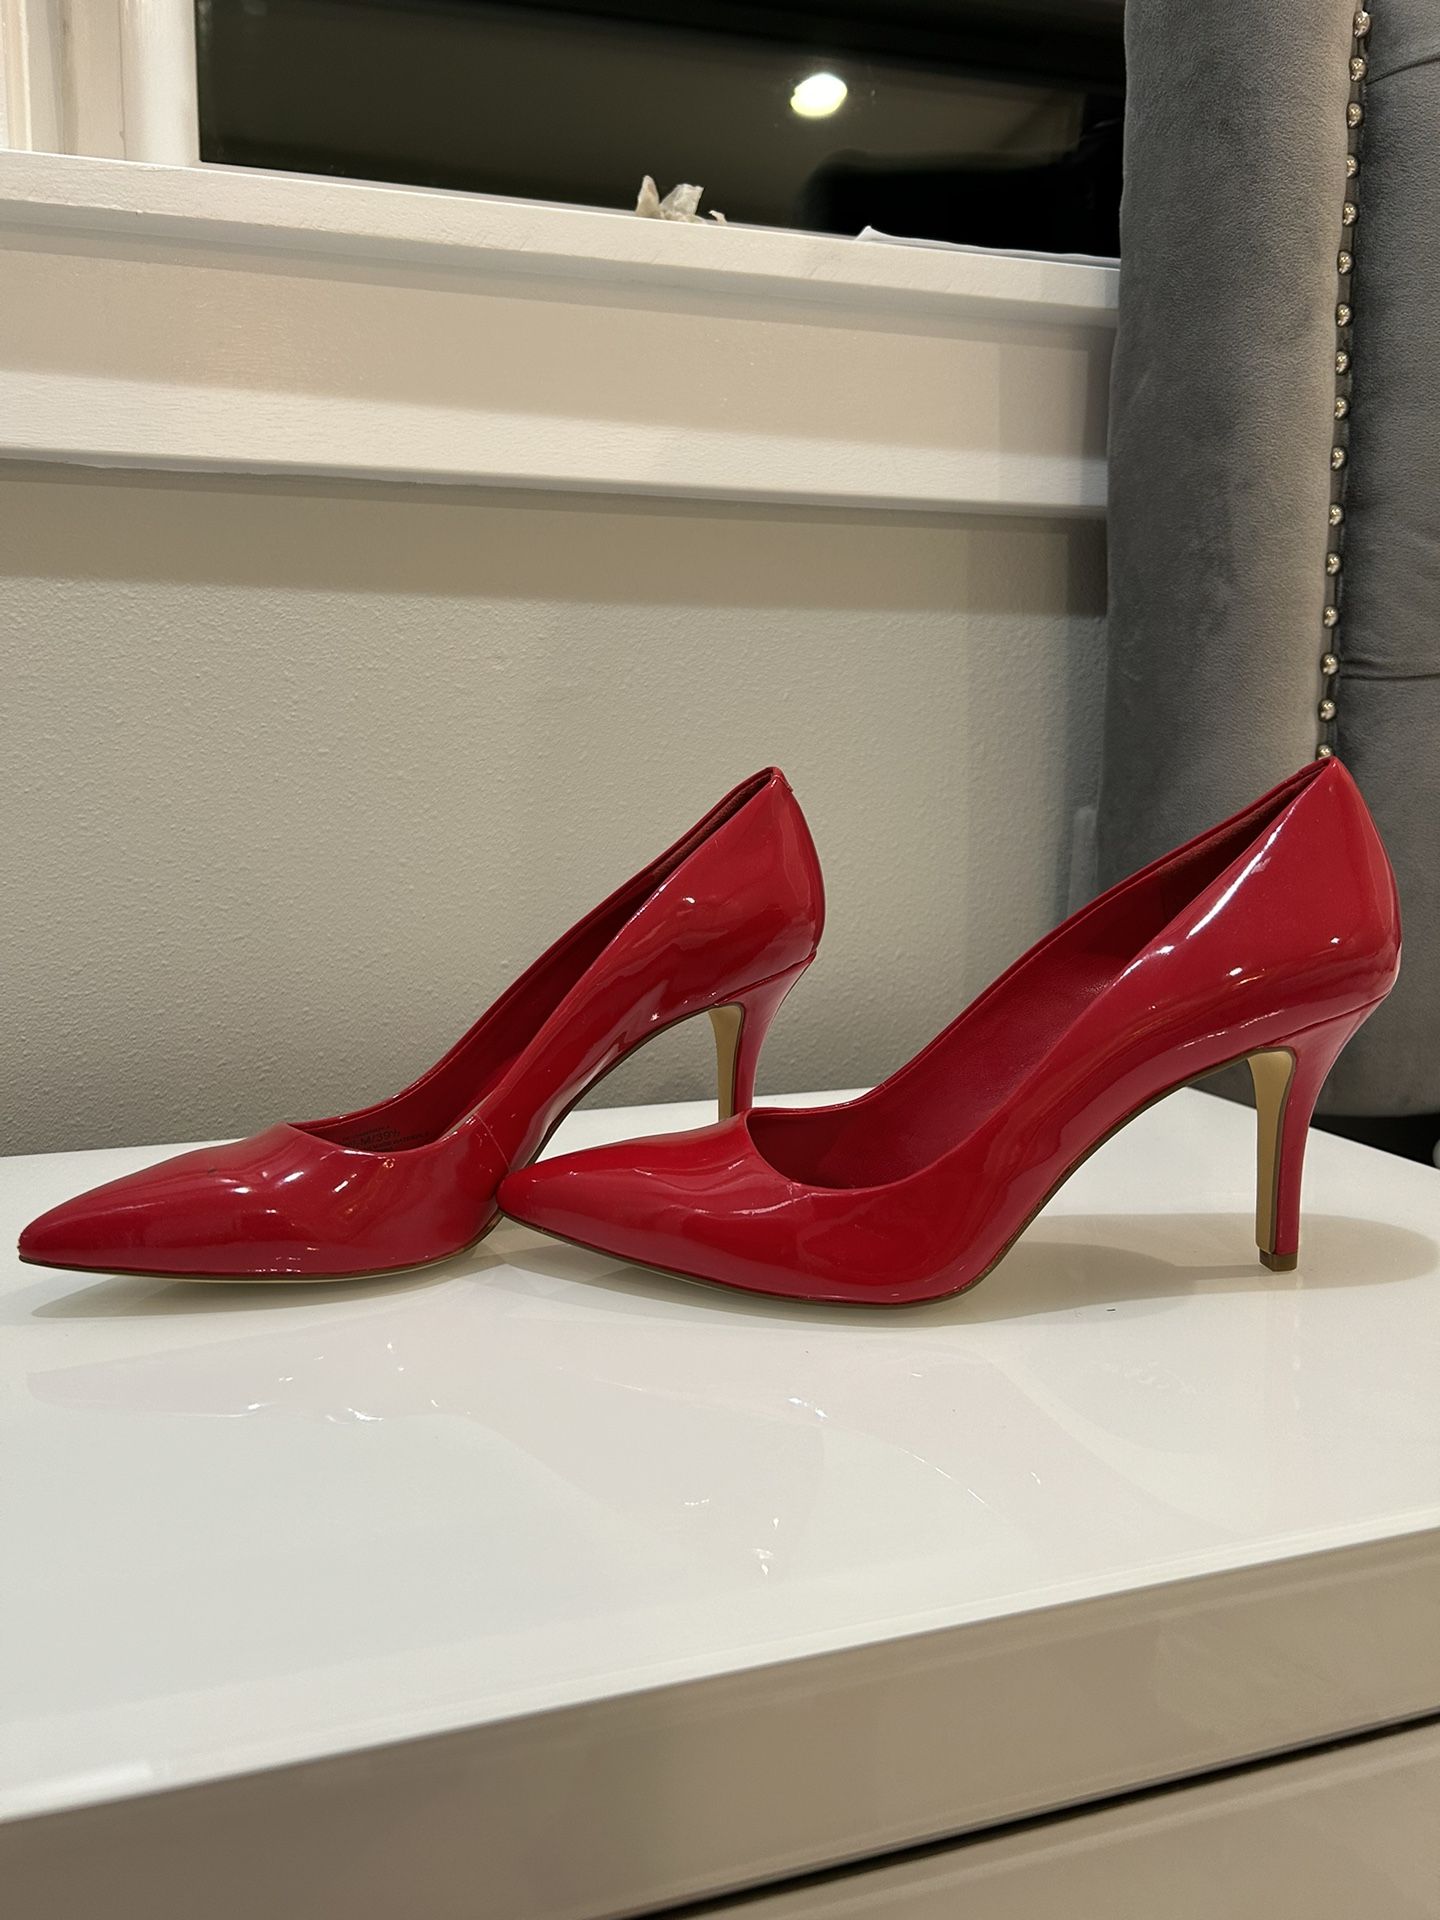 Red BCBG heels 